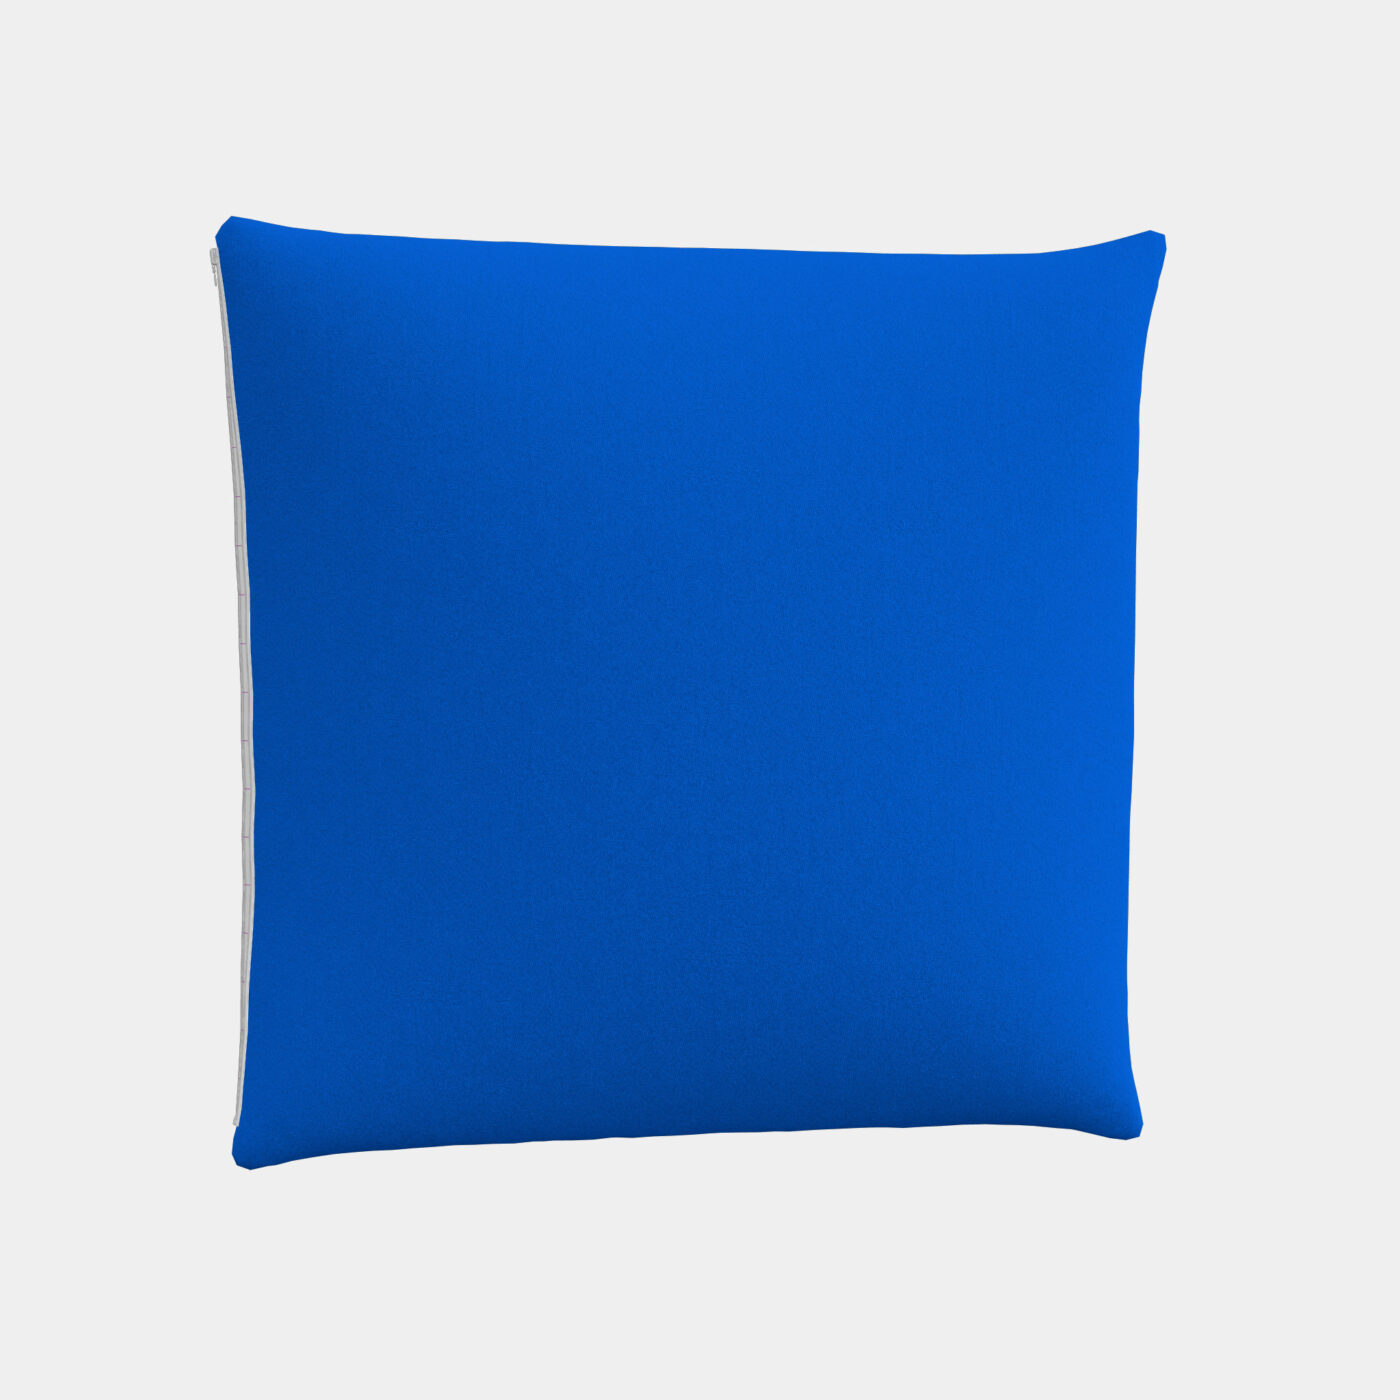 Customized Throw Pillow